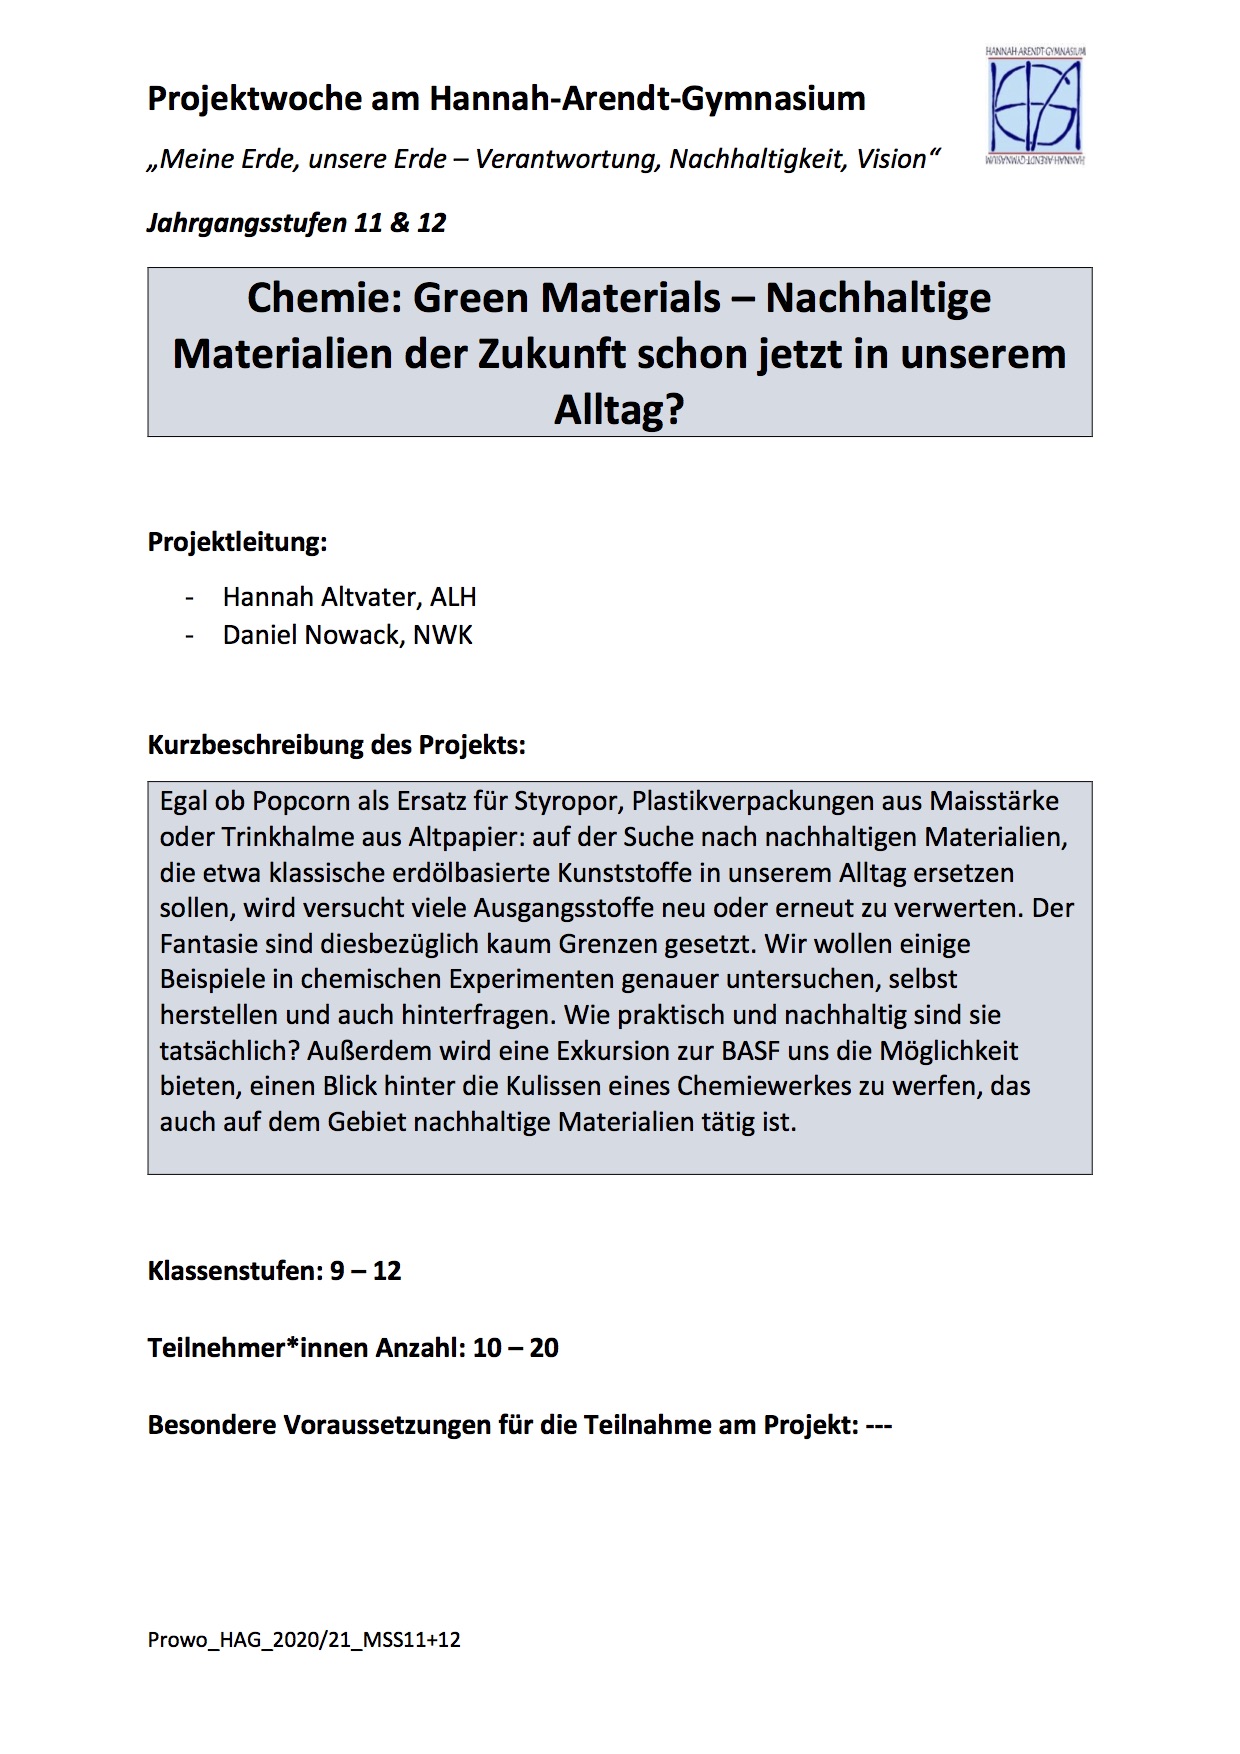 Chemie: Green Materials - Nachhaltige Materialien der Zukunft schon jetzt in unserem Alltag?